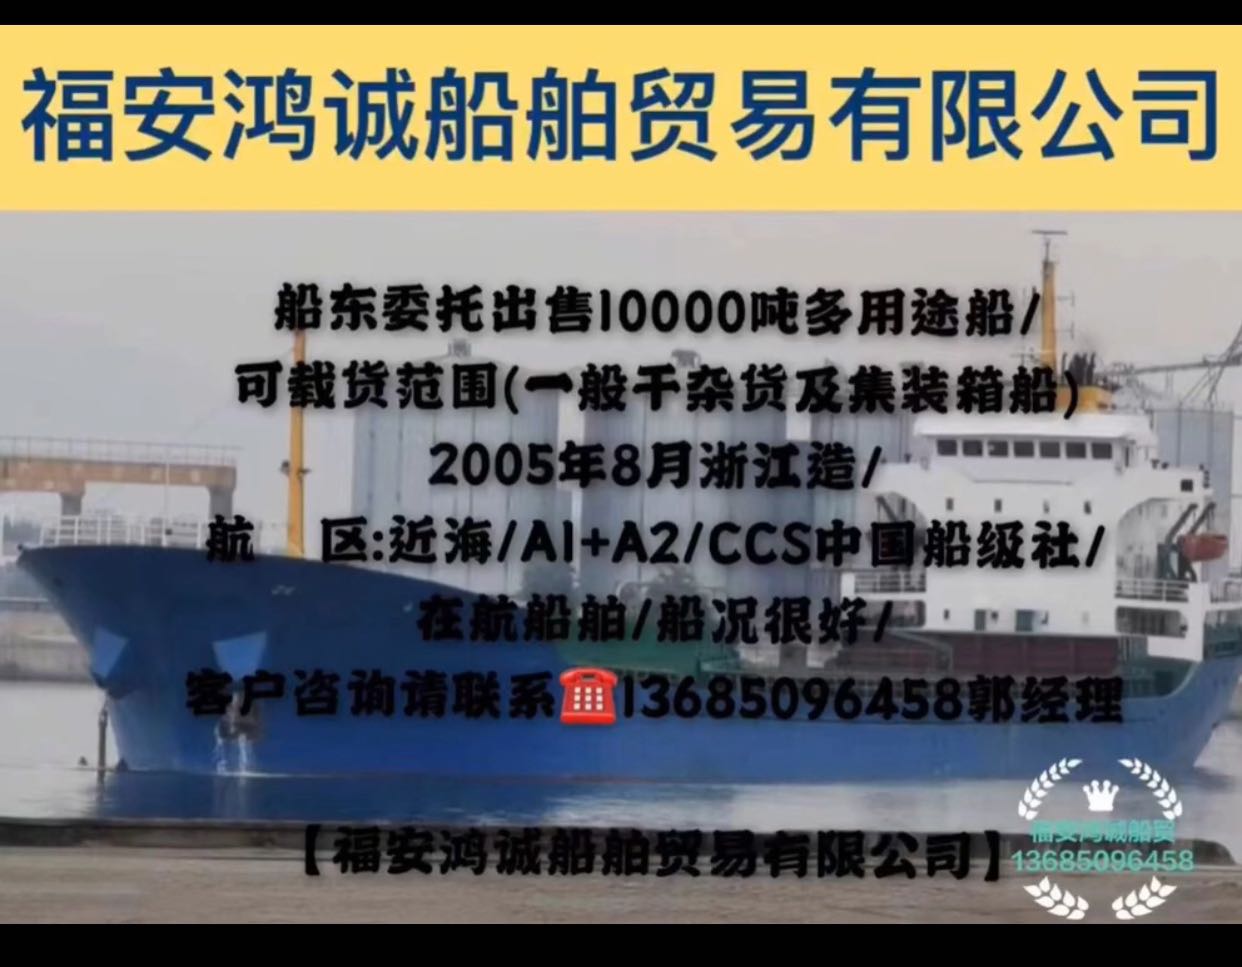 出售10000吨多用途船